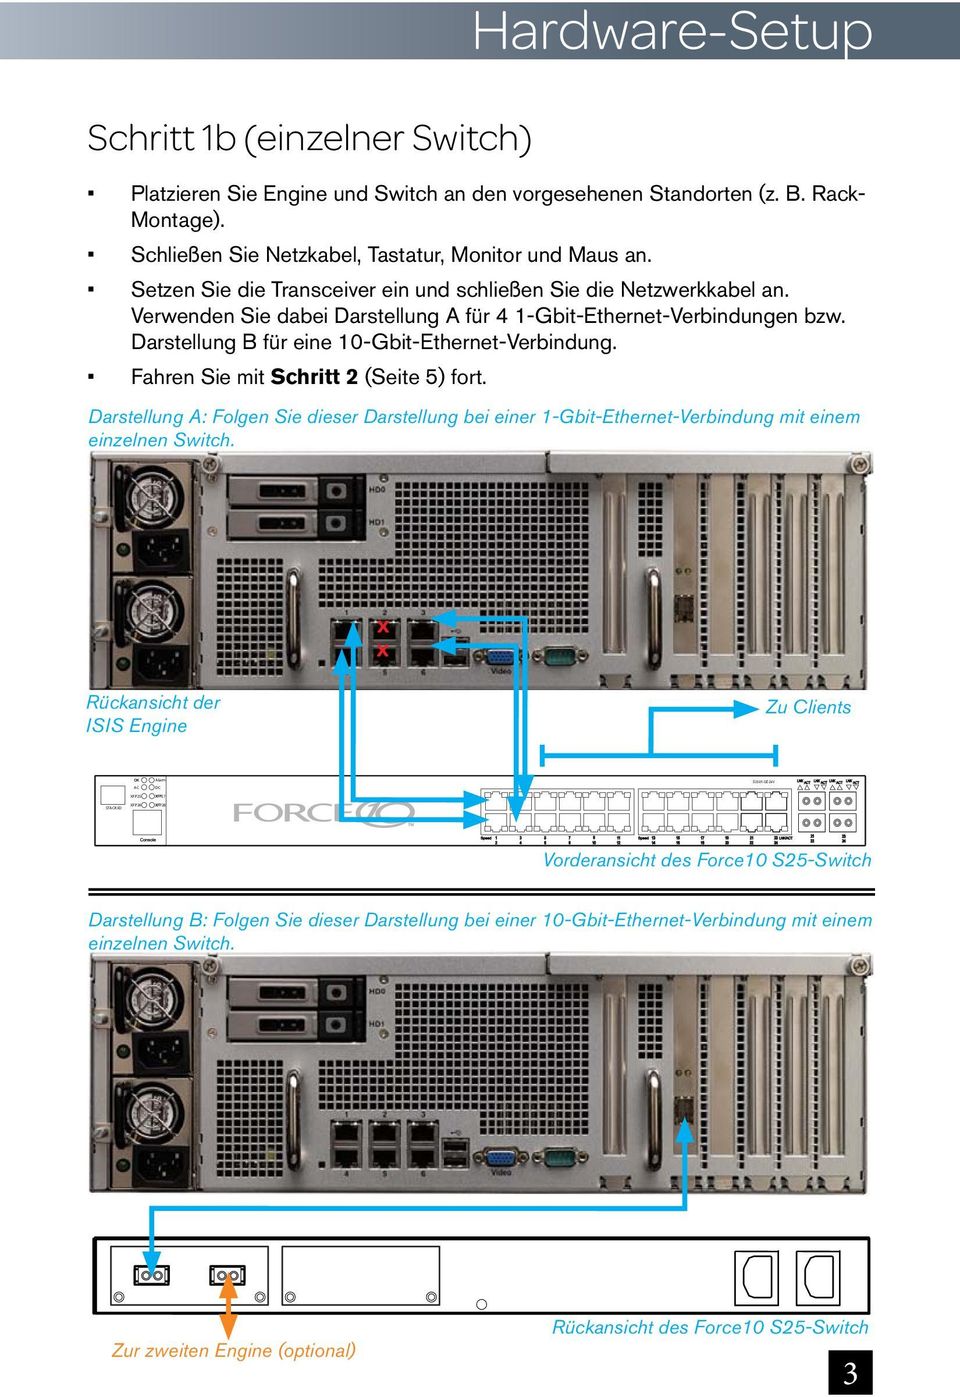 Darstellung B für eine 10-Gbit-Ethernet-Verbindung. Fahren Sie mit Schritt 2 (Seite 5) fort.